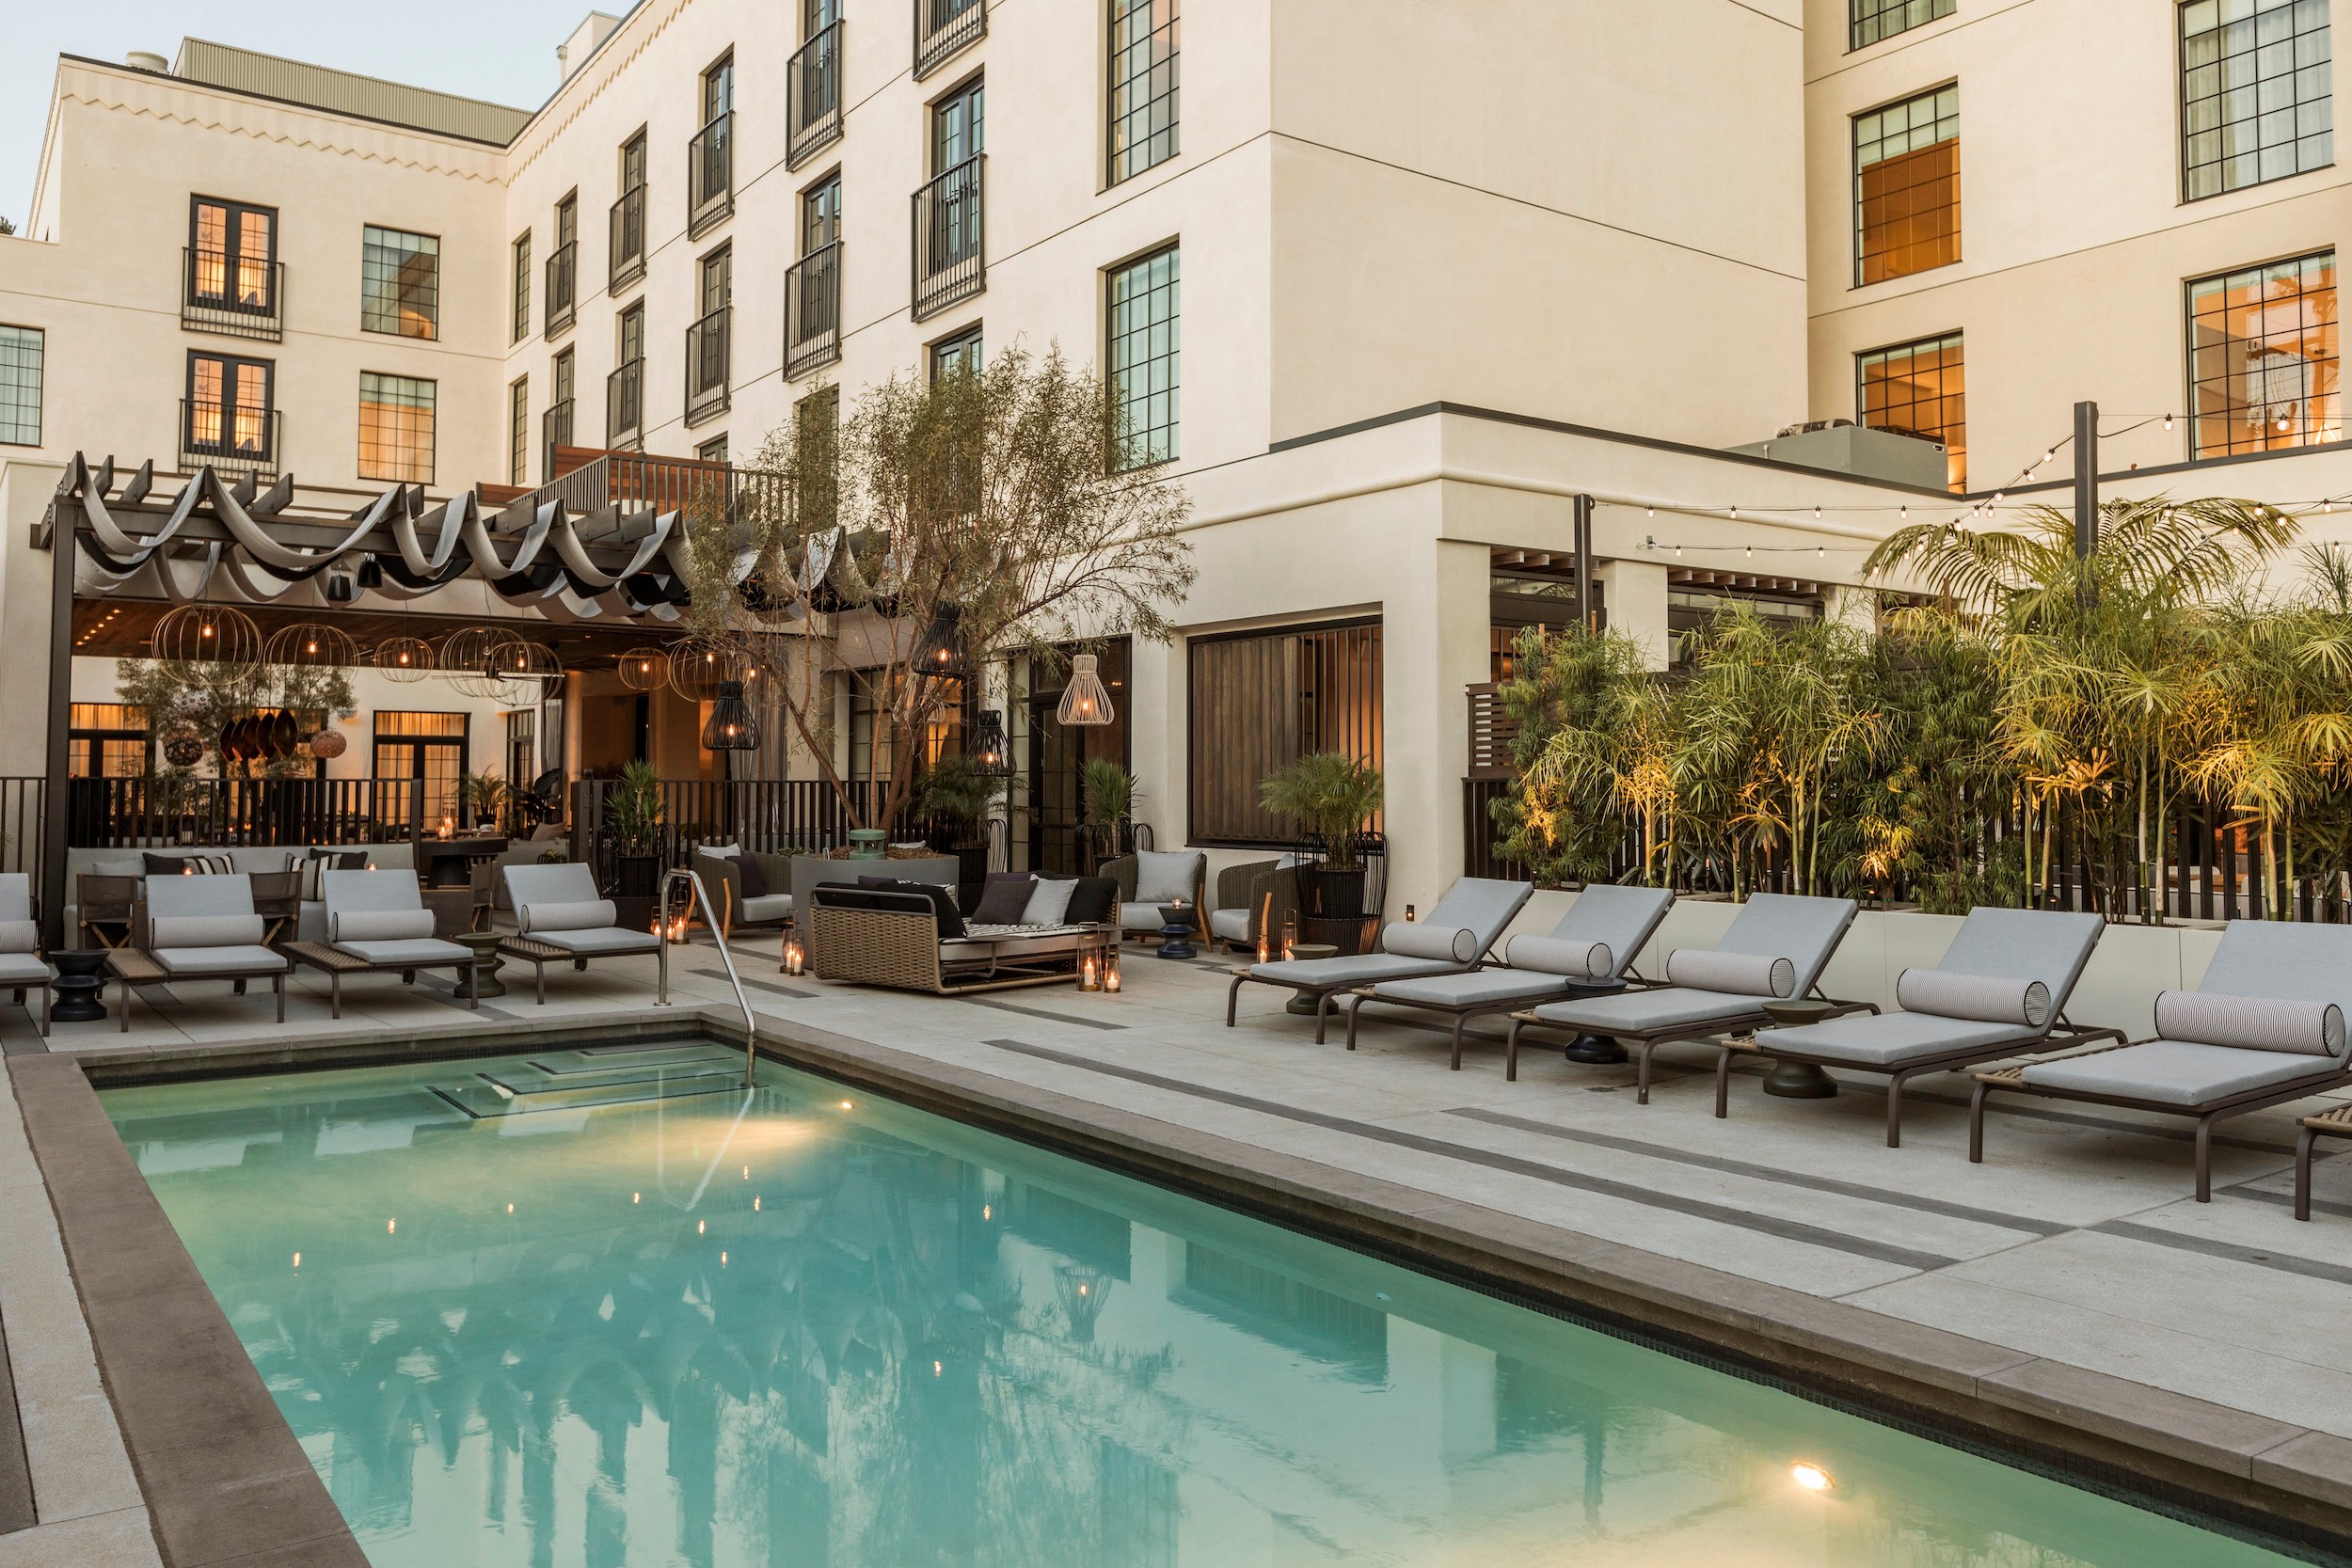 Pool courtyard at Kimpton La Peer Hotel, West Hollywood, CA 